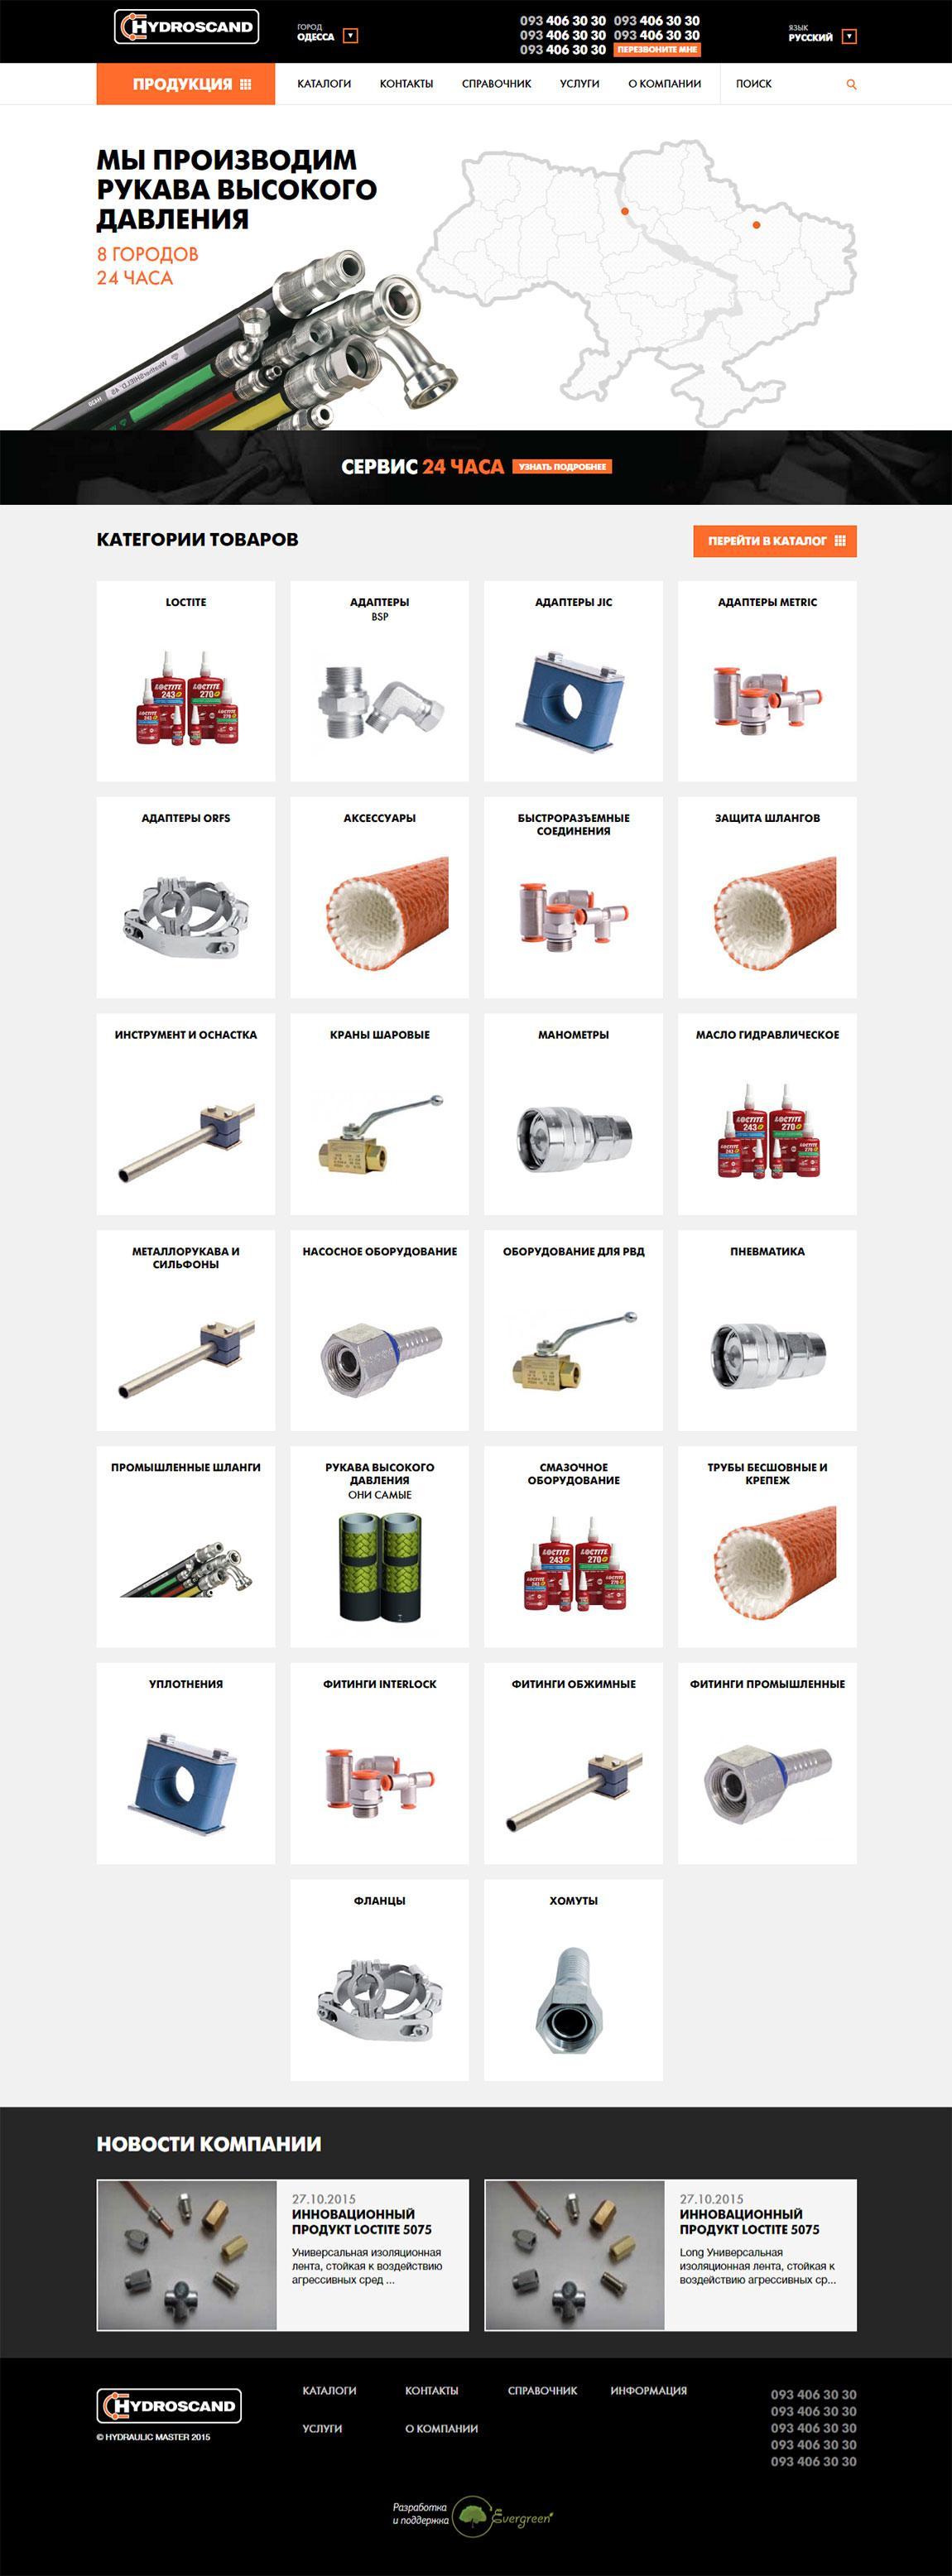 каталог гидравлических частей, шлангов и прочего для механизмов и двигателей | проекты Evergreen 11